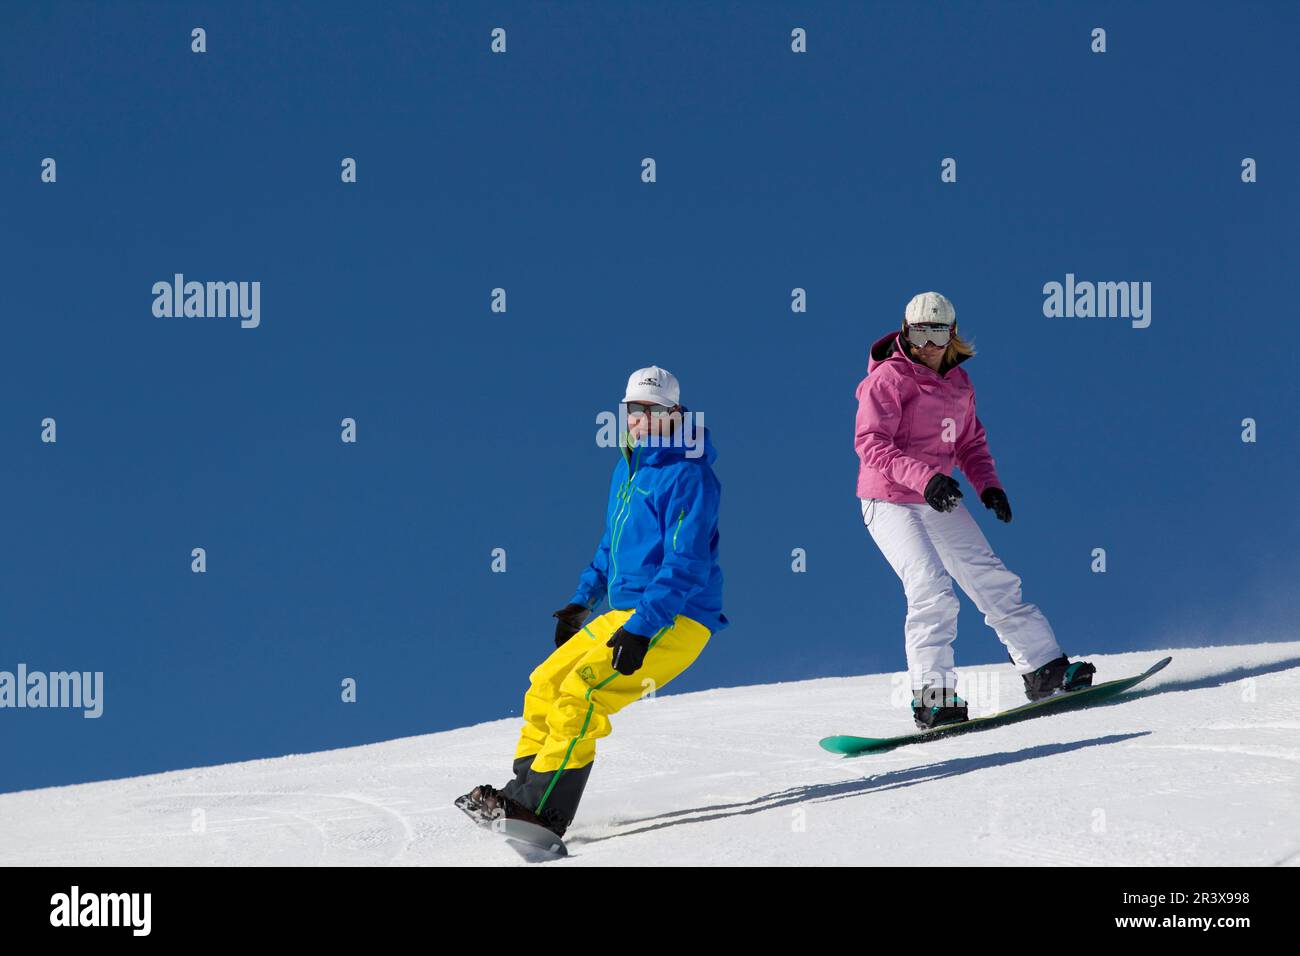 Illustration, Snowboarden im Departement Hautes-Alpes (Oberalpen). Abseits der Piste Snowboarden, zwei Personen im Pulverschnee Stockfoto